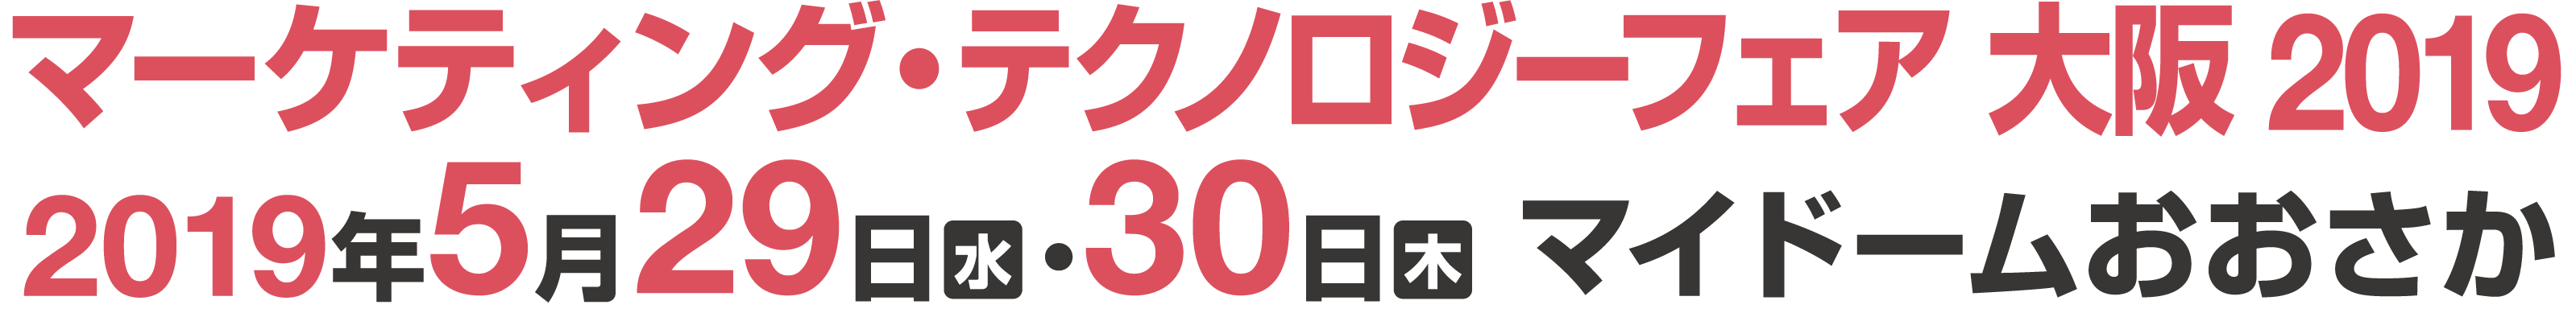 マーケティング・テクノロジーフェア 大阪 2019 2019年5月29日（水） ・30日（木）10:00〜17:00 マイドームおおさか